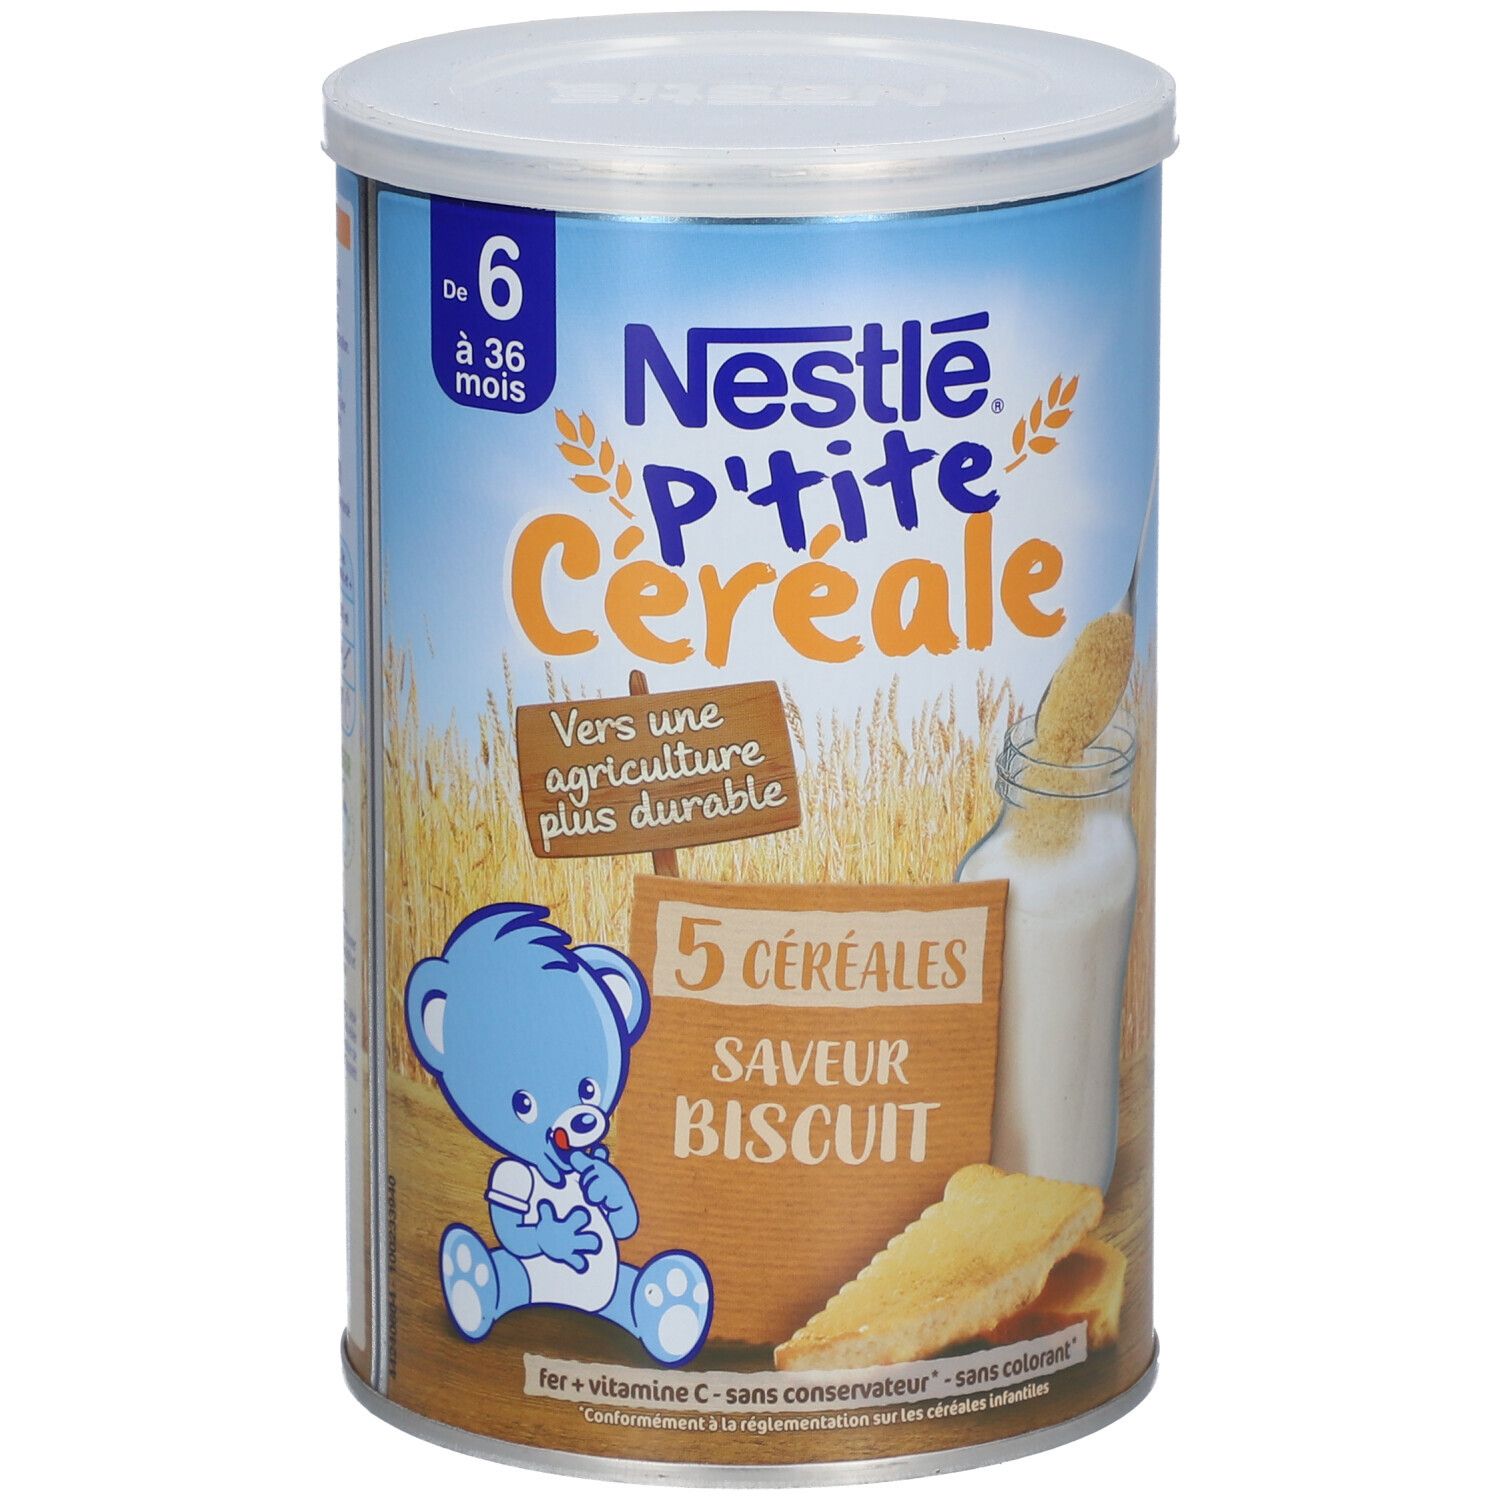 P'tite céréale 5 céréales biscuitée dès 6 mois boîte, Nestlé (415